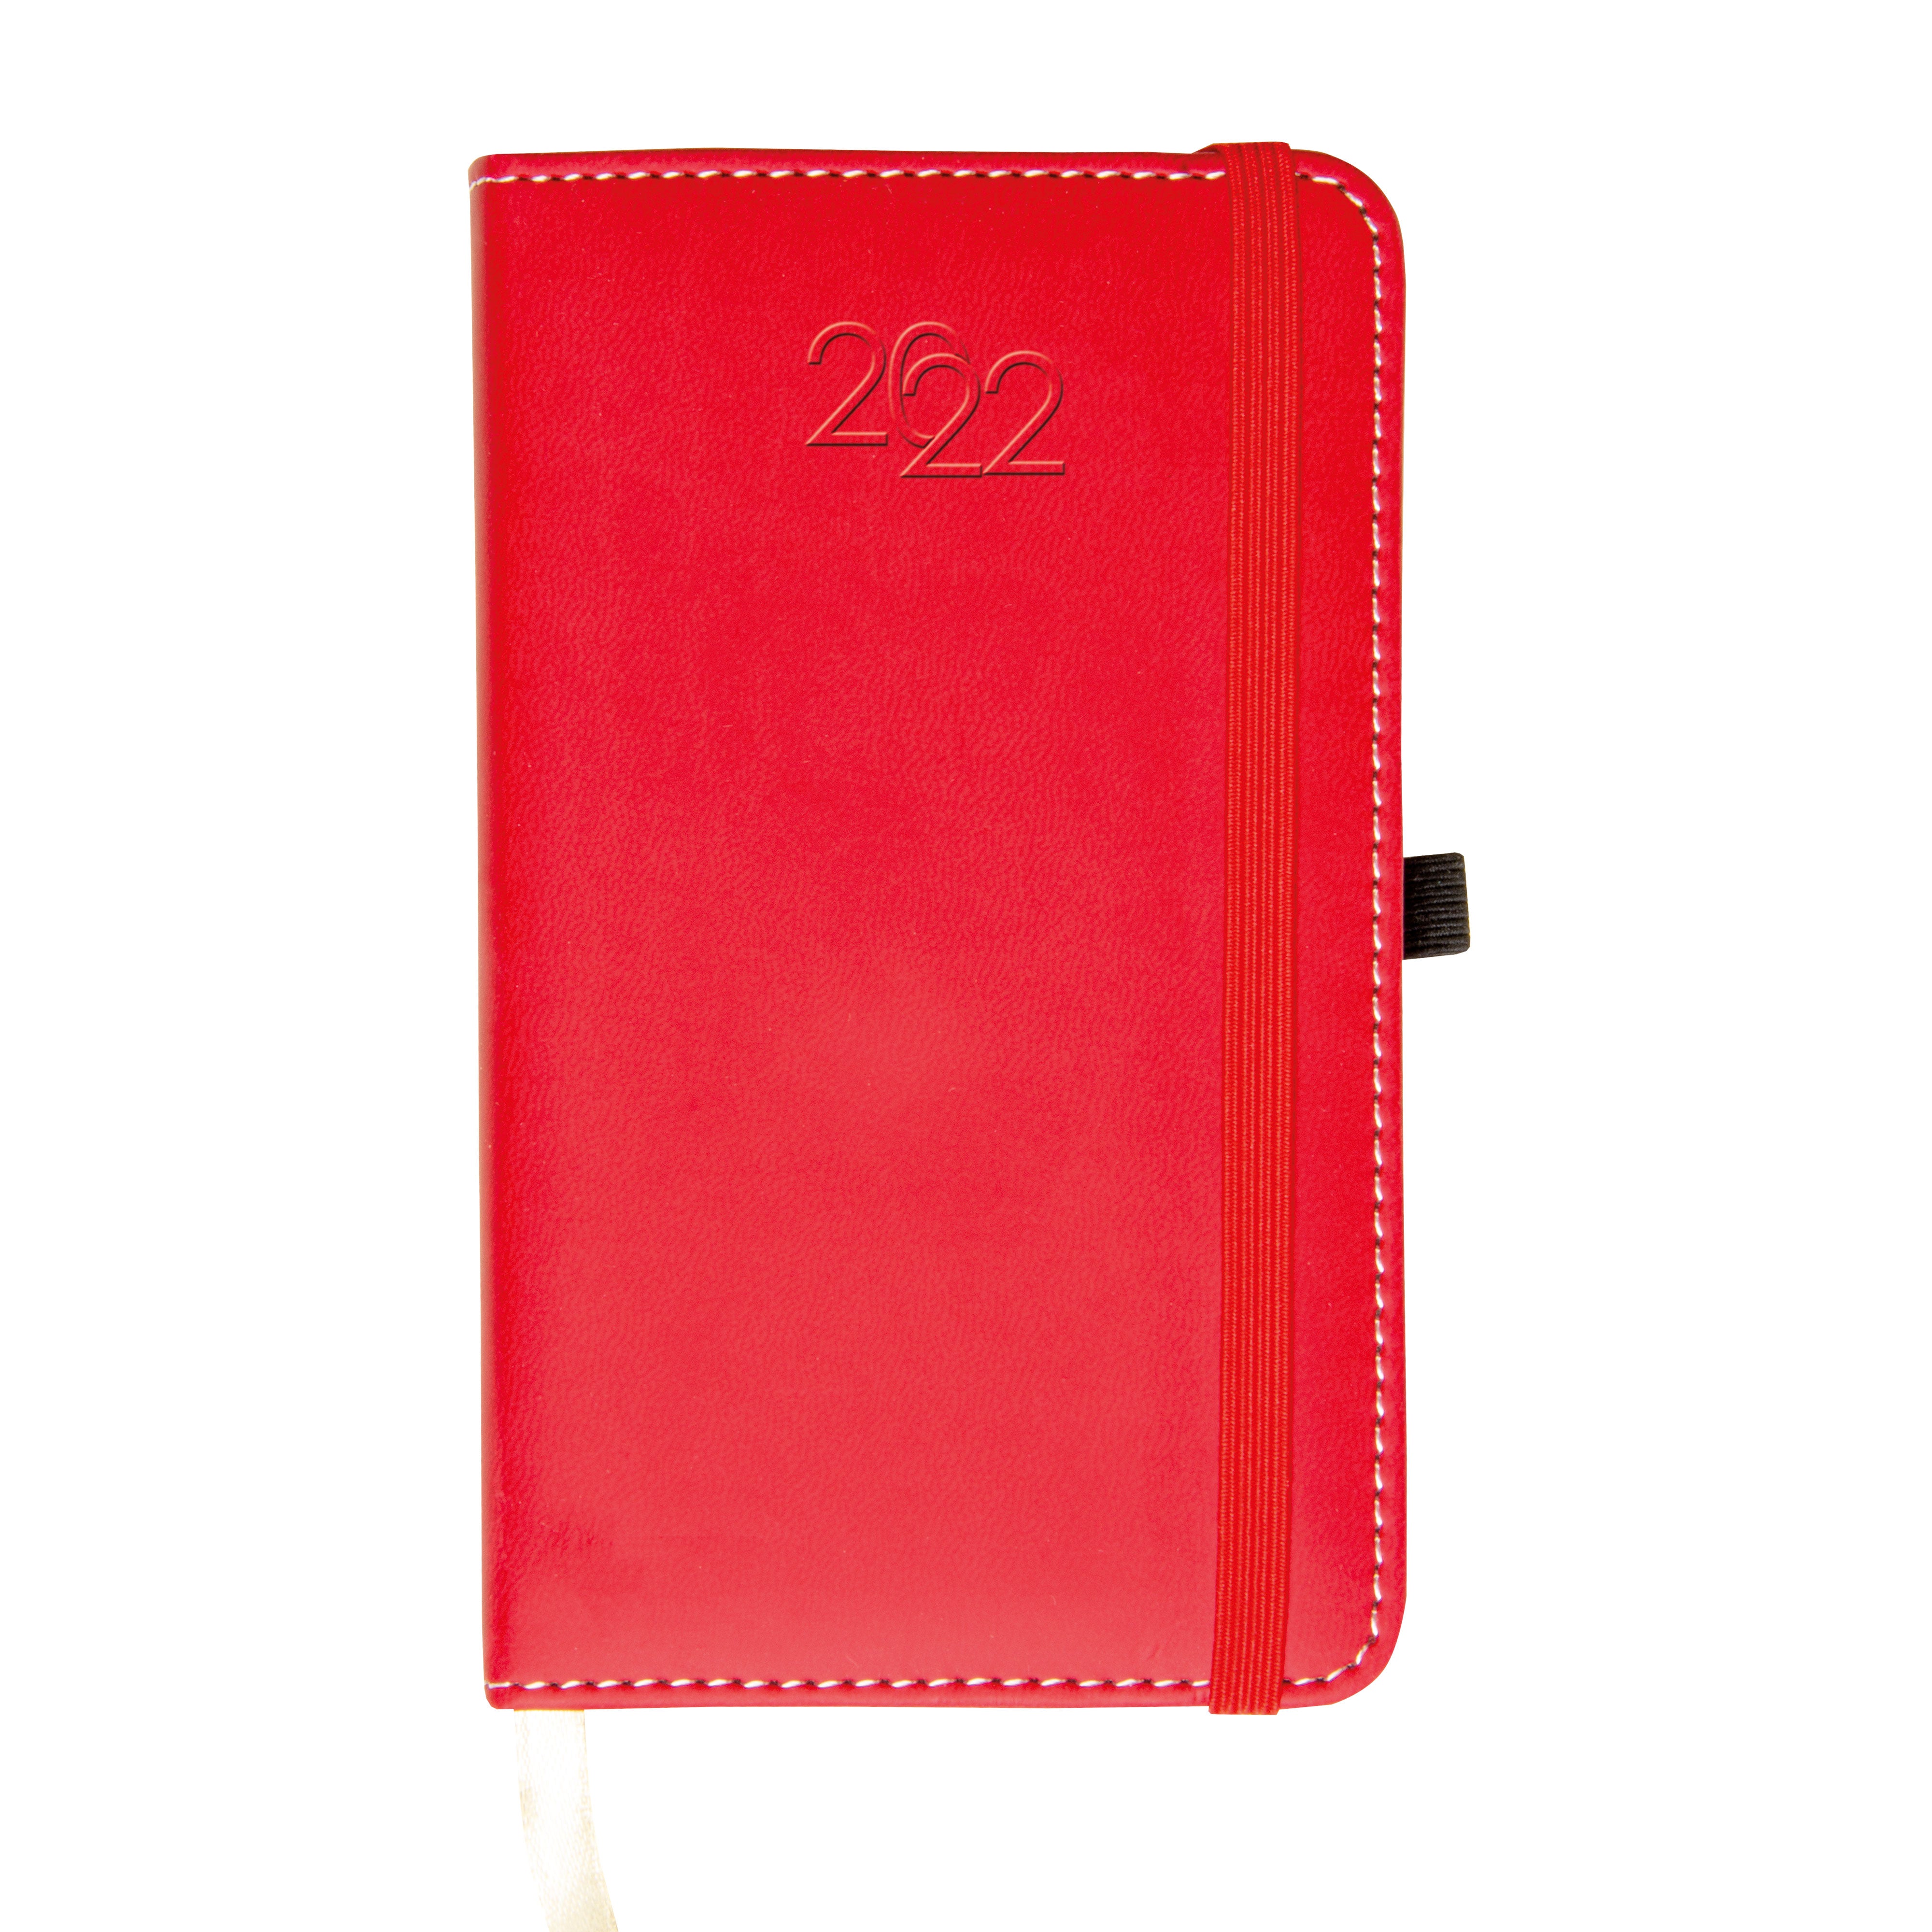 Pocket Diary 2022